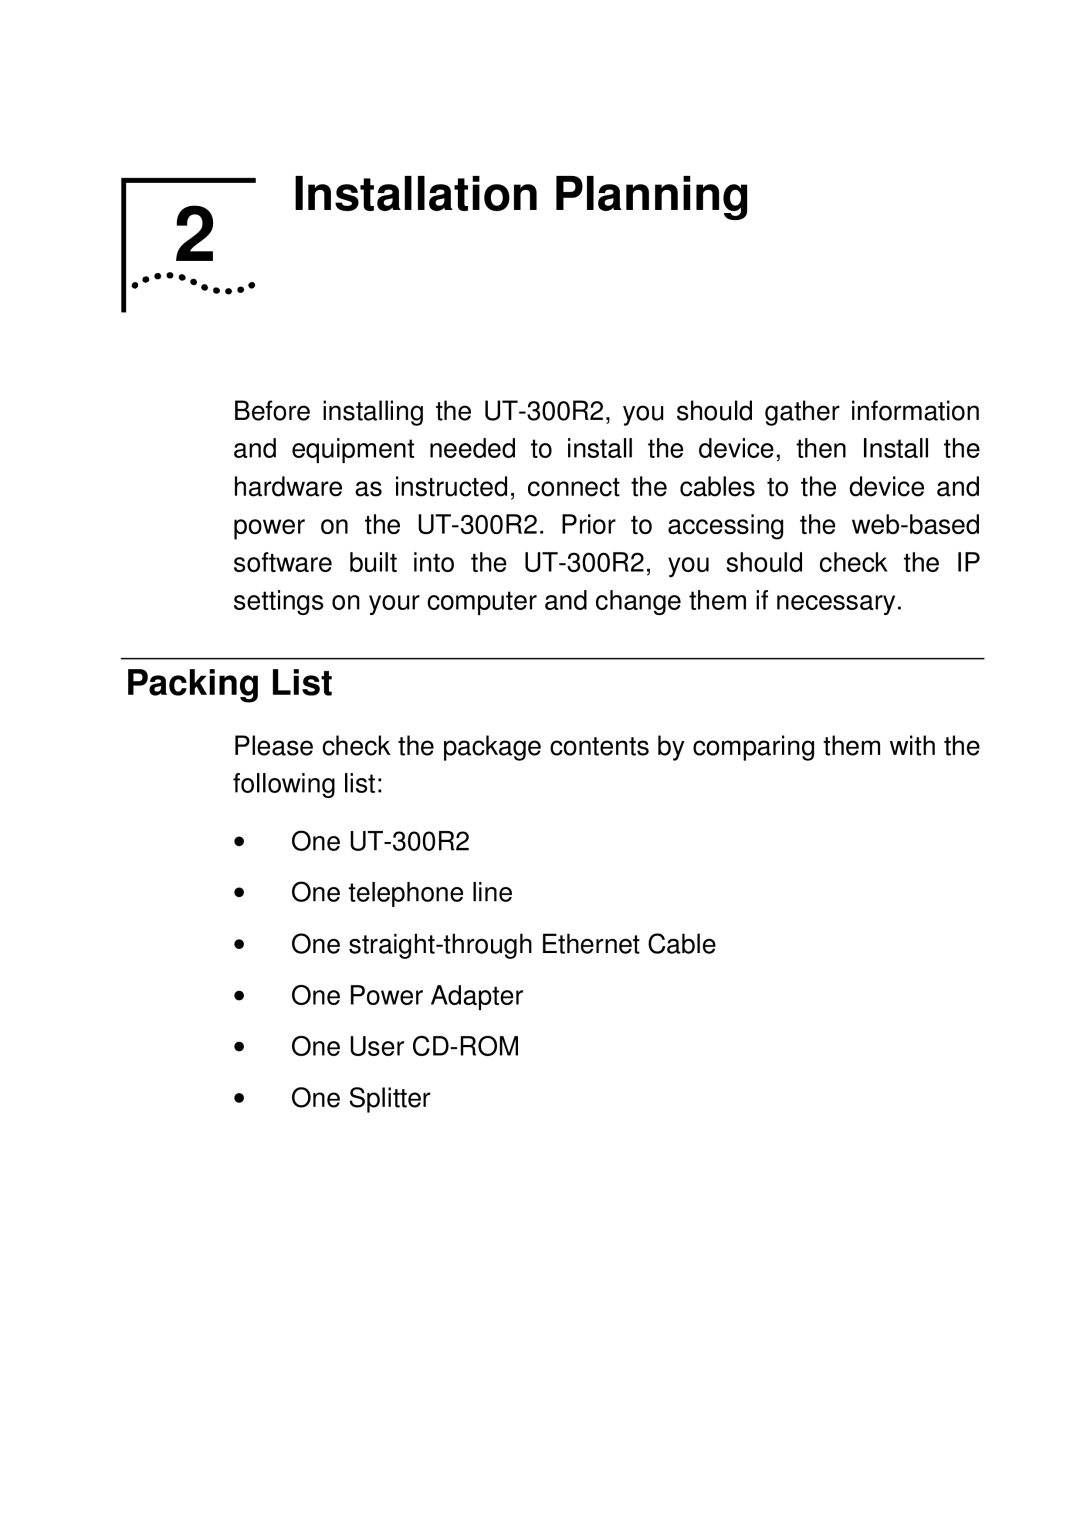 UTStarcom UT-300R2 manual Installation Planning, Packing List 